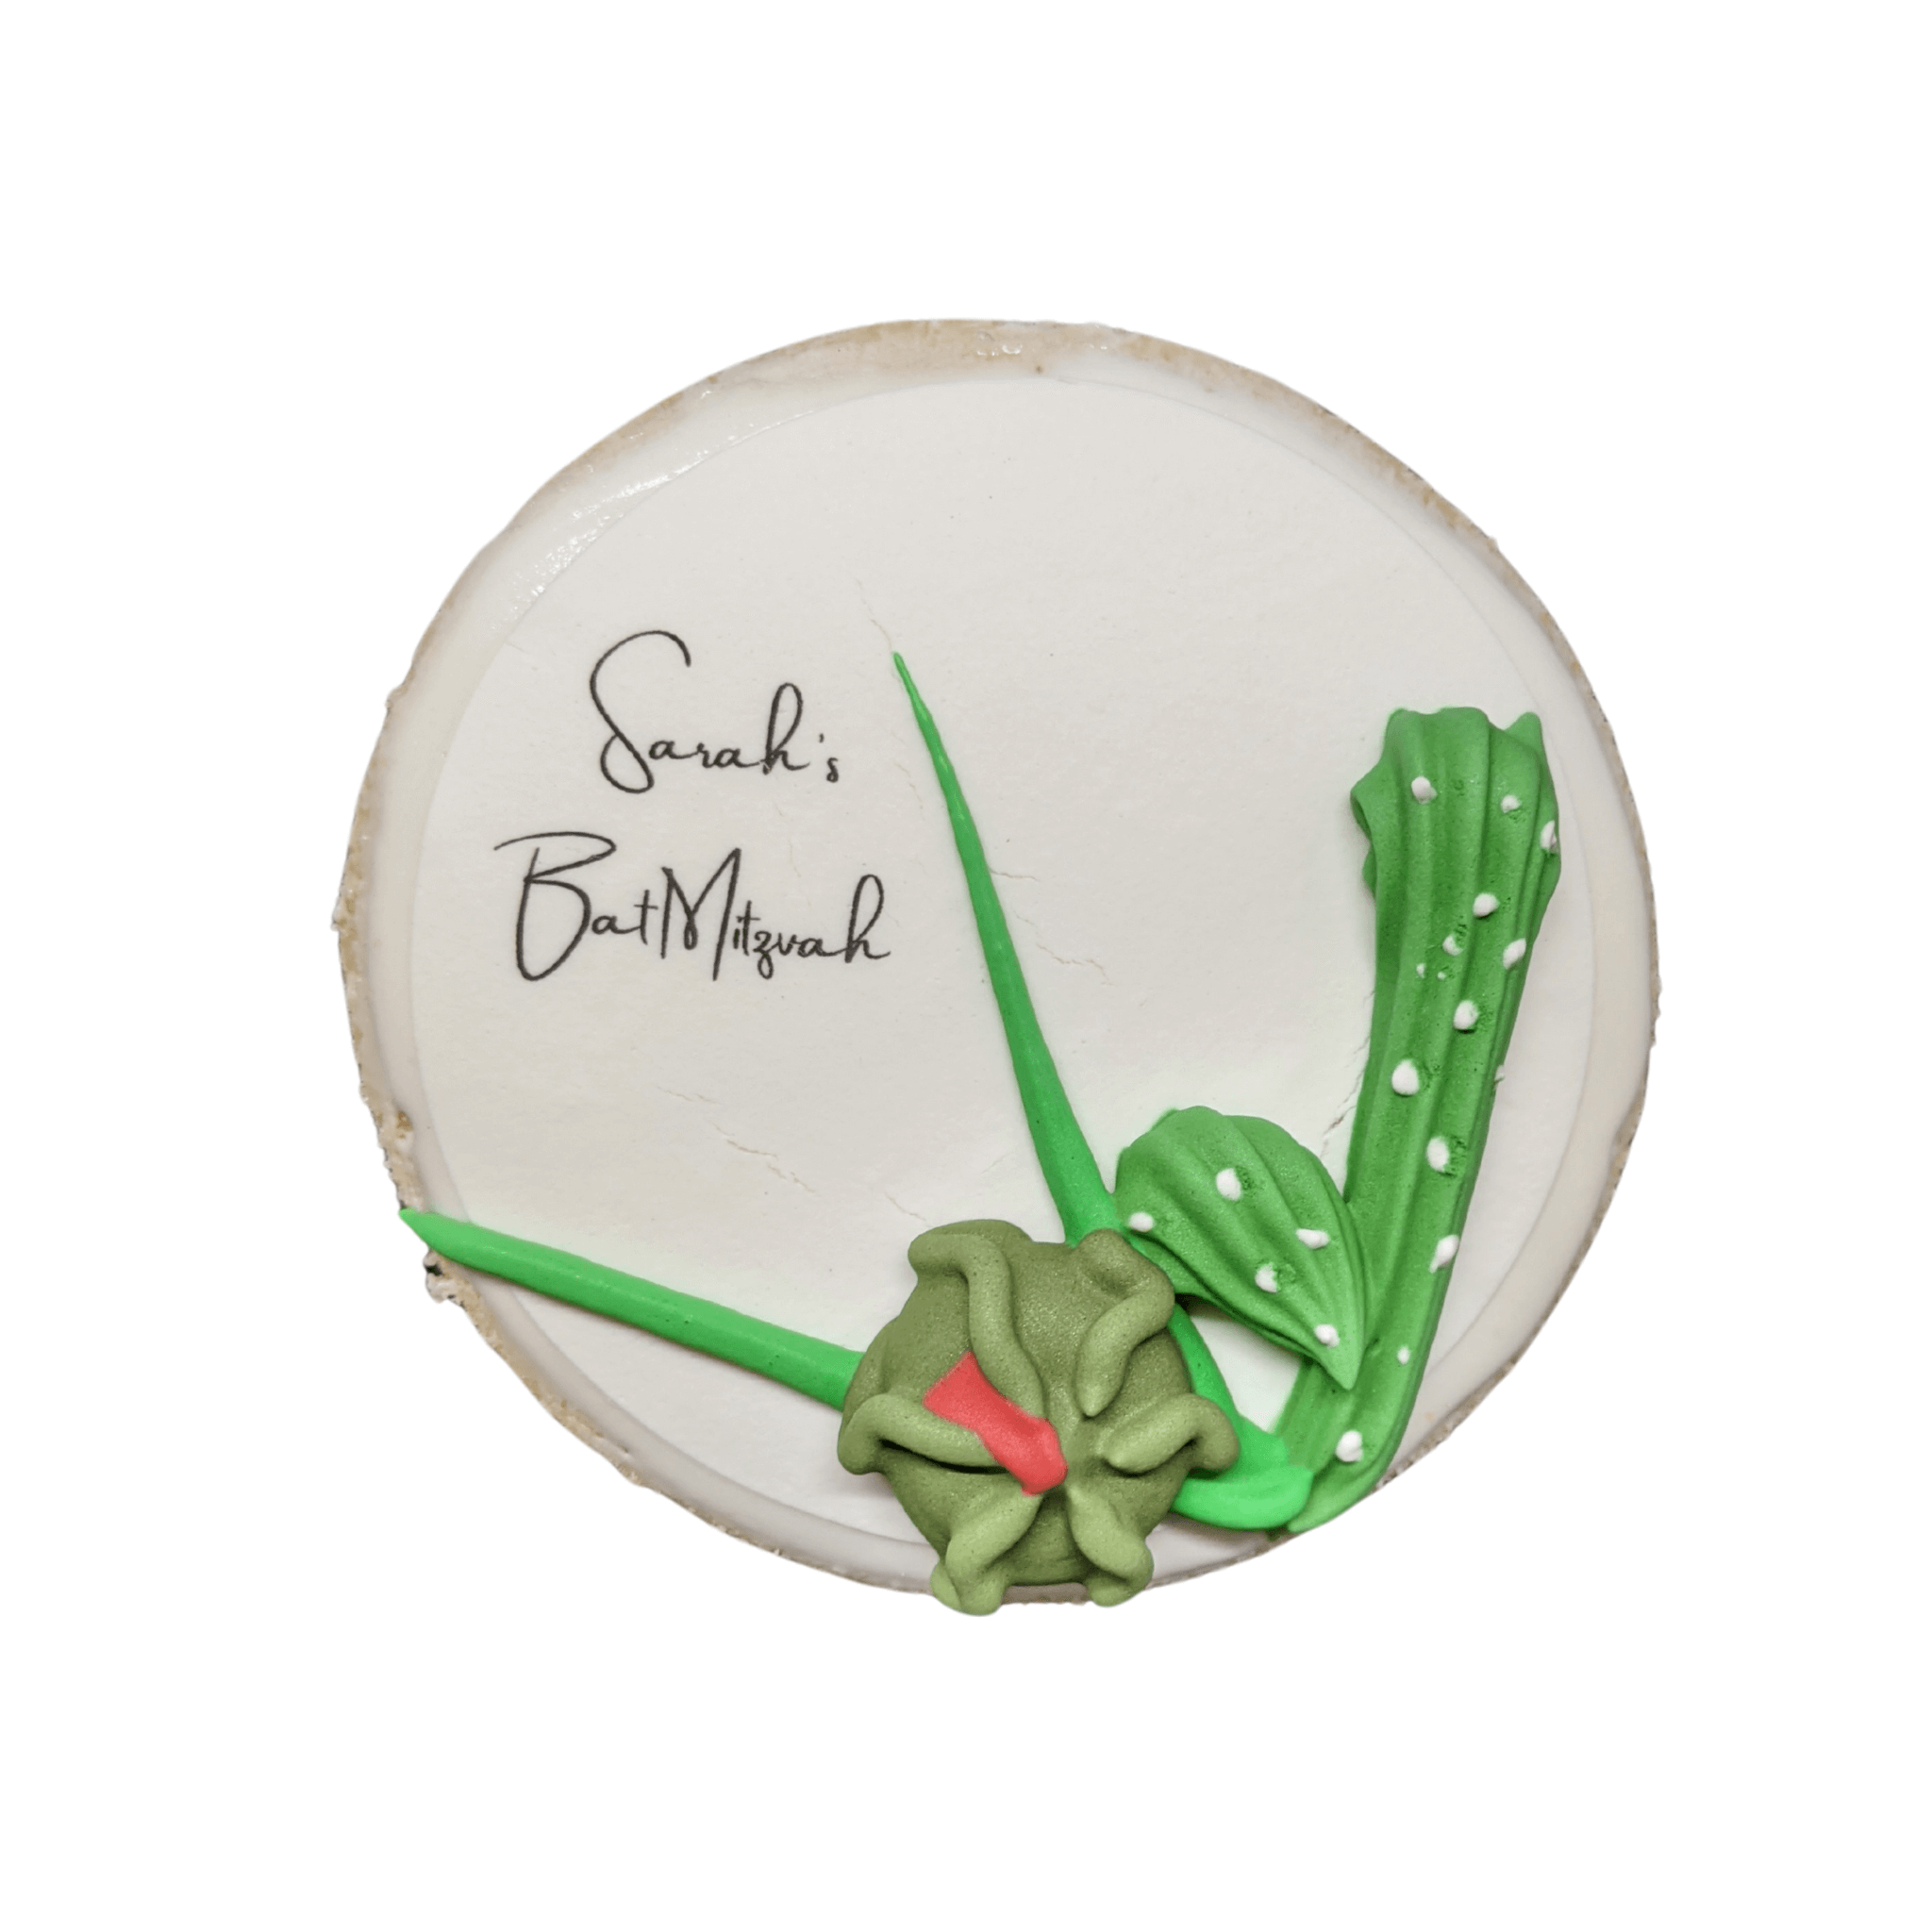 Sarah's Bat Mitzvah cookie